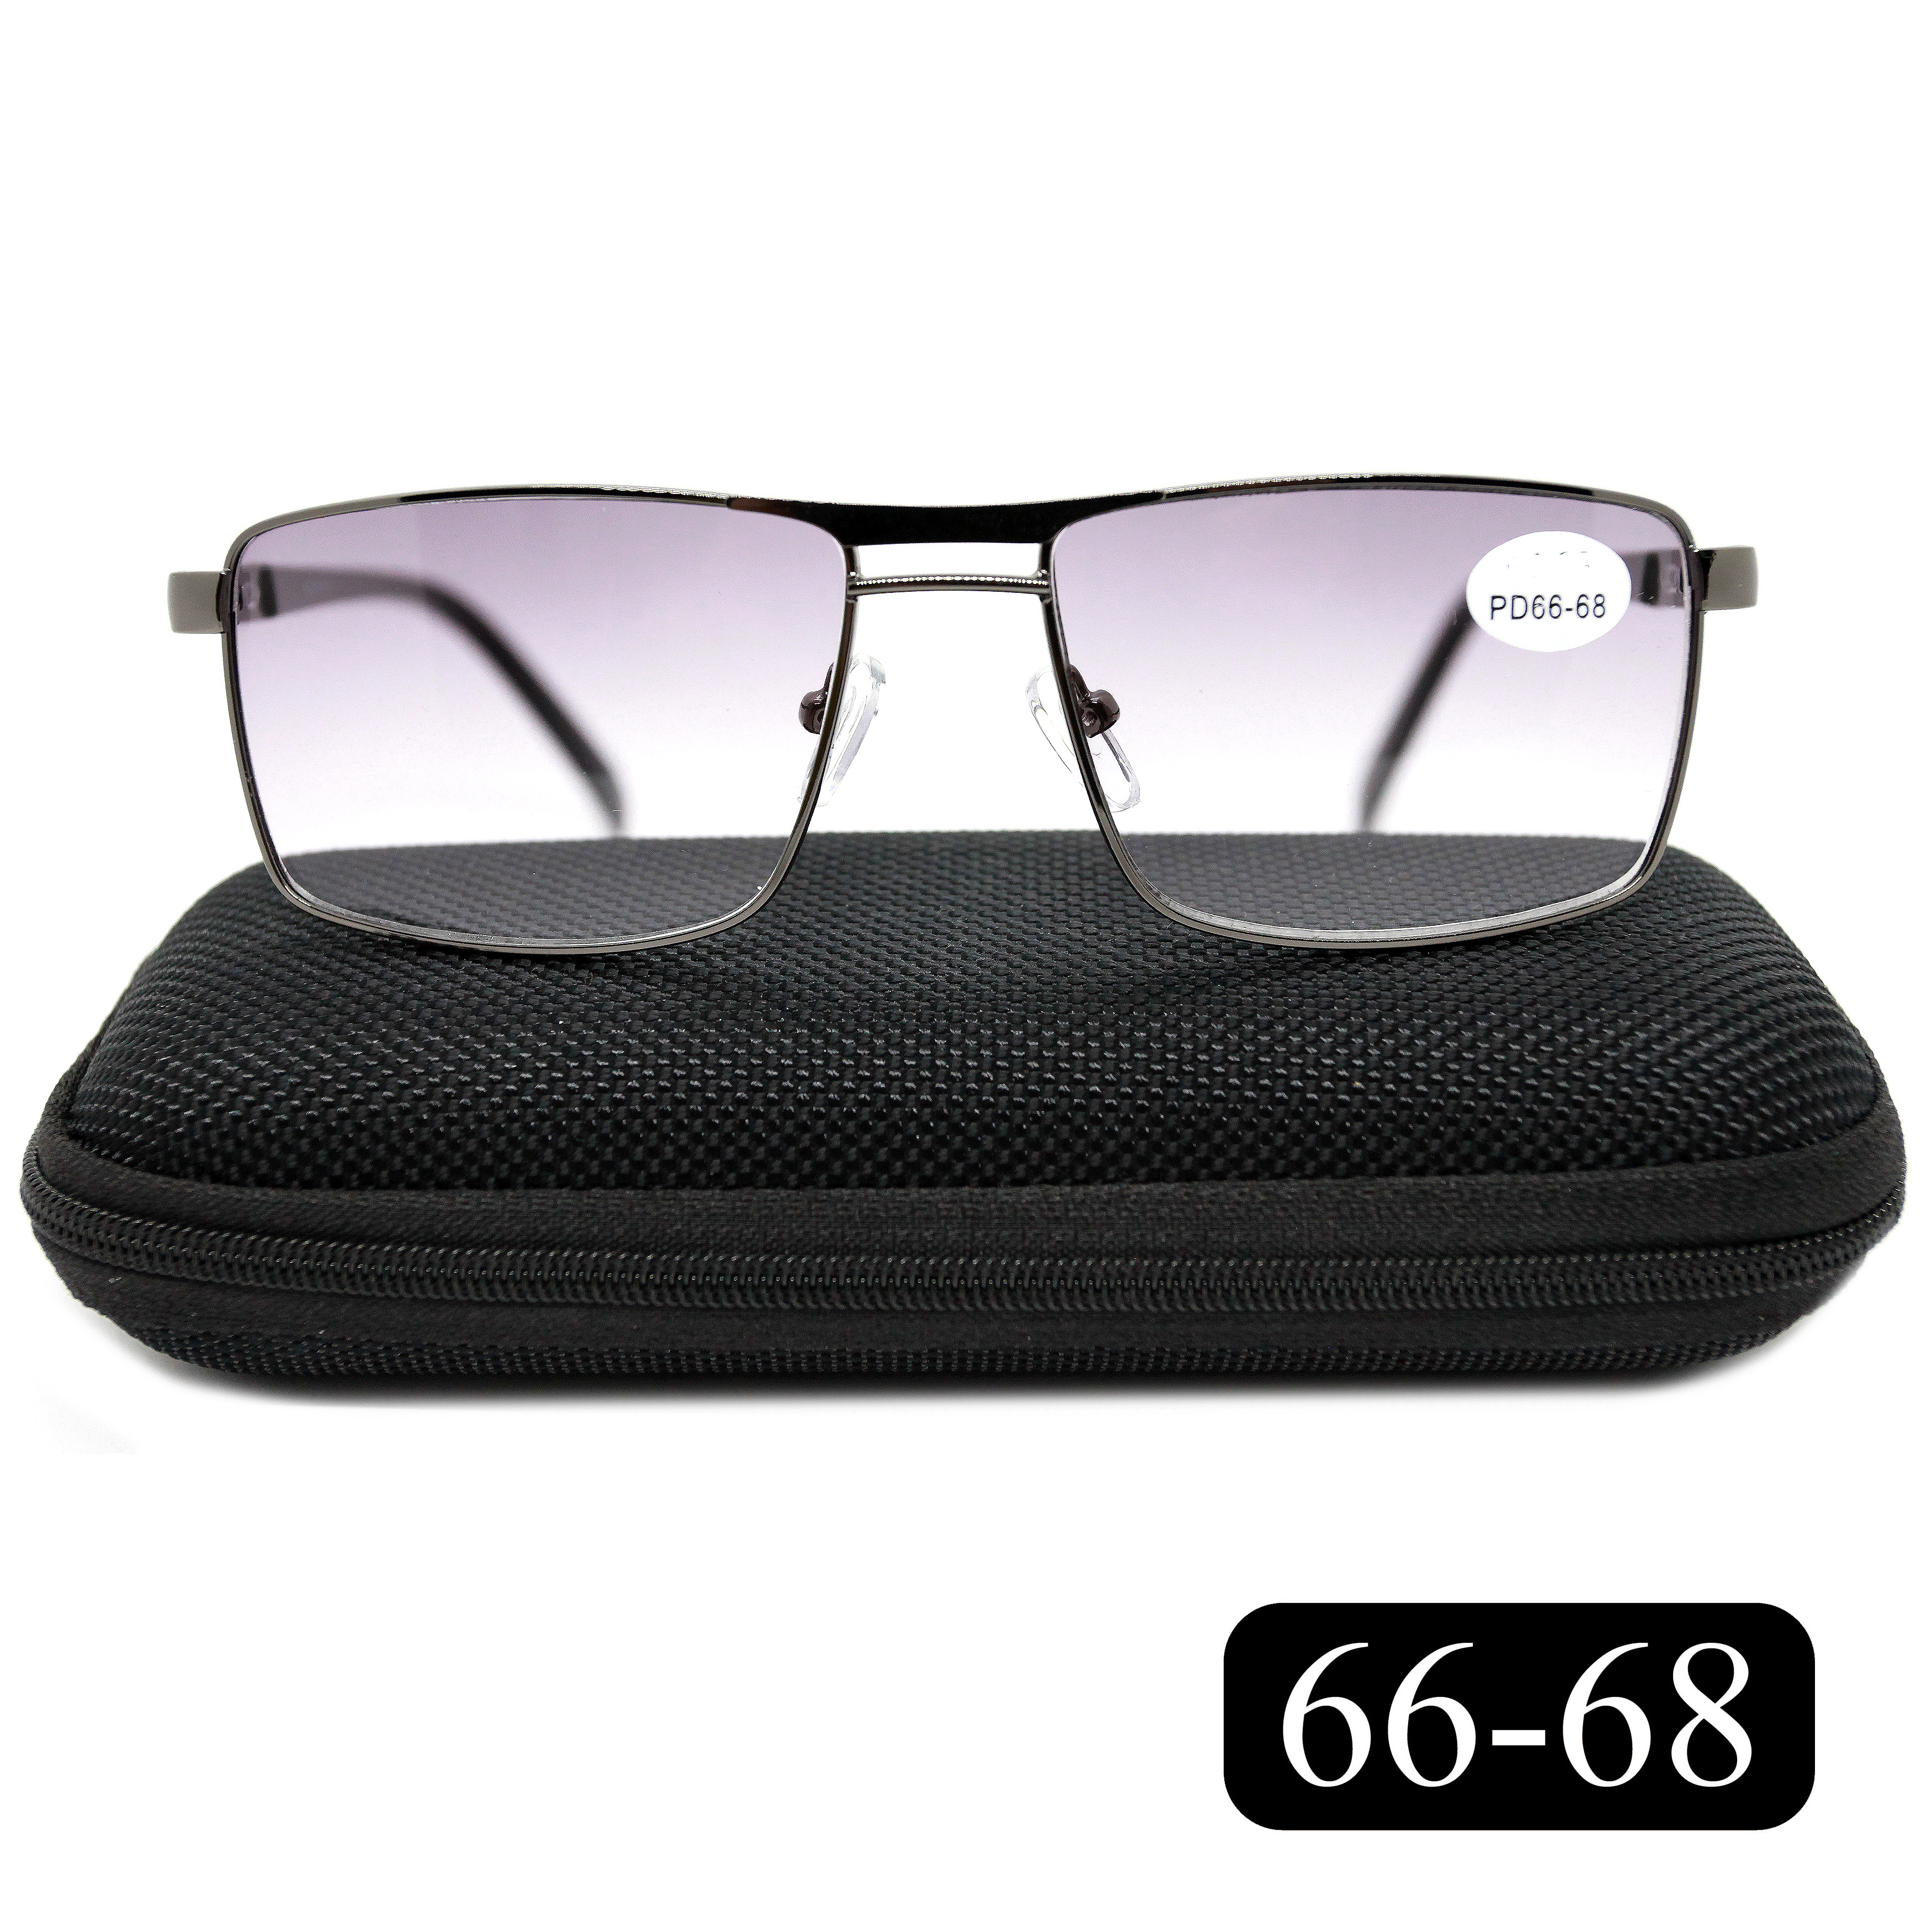 Готовые очки Salivio 5009 +1,00, c футляром, с тонировкой, черный, РЦ 66-68